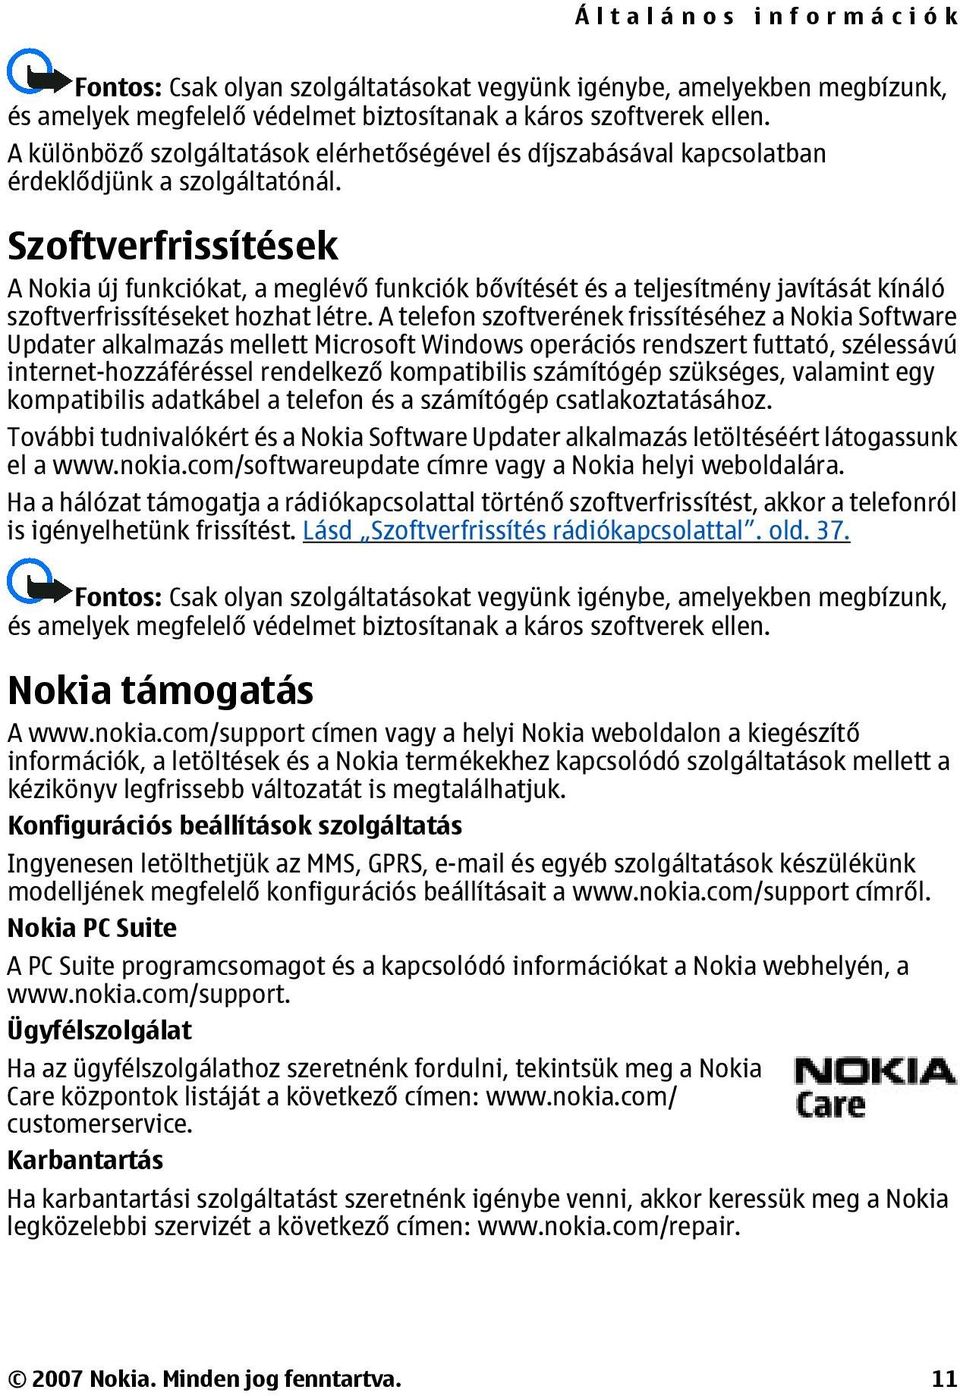 Szoftverfrissítések A Nokia új funkciókat, a meglévő funkciók bővítését és a teljesítmény javítását kínáló szoftverfrissítéseket hozhat létre.